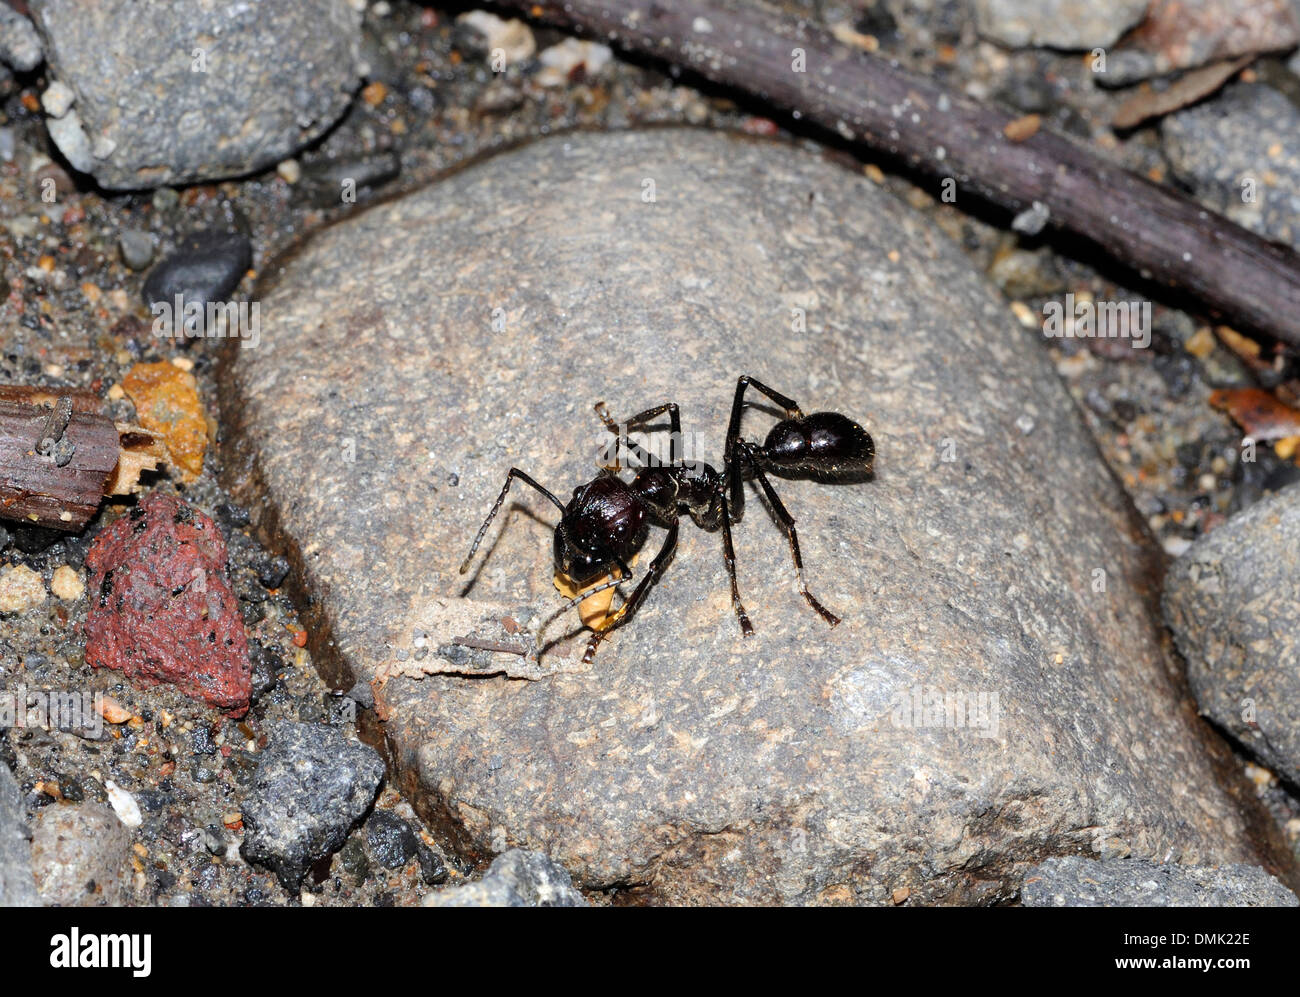 Un grande ant, forse Paraponera clavata, localmente denominata un proiettile ant a causa del dolore causato dal suo morso. Foto Stock